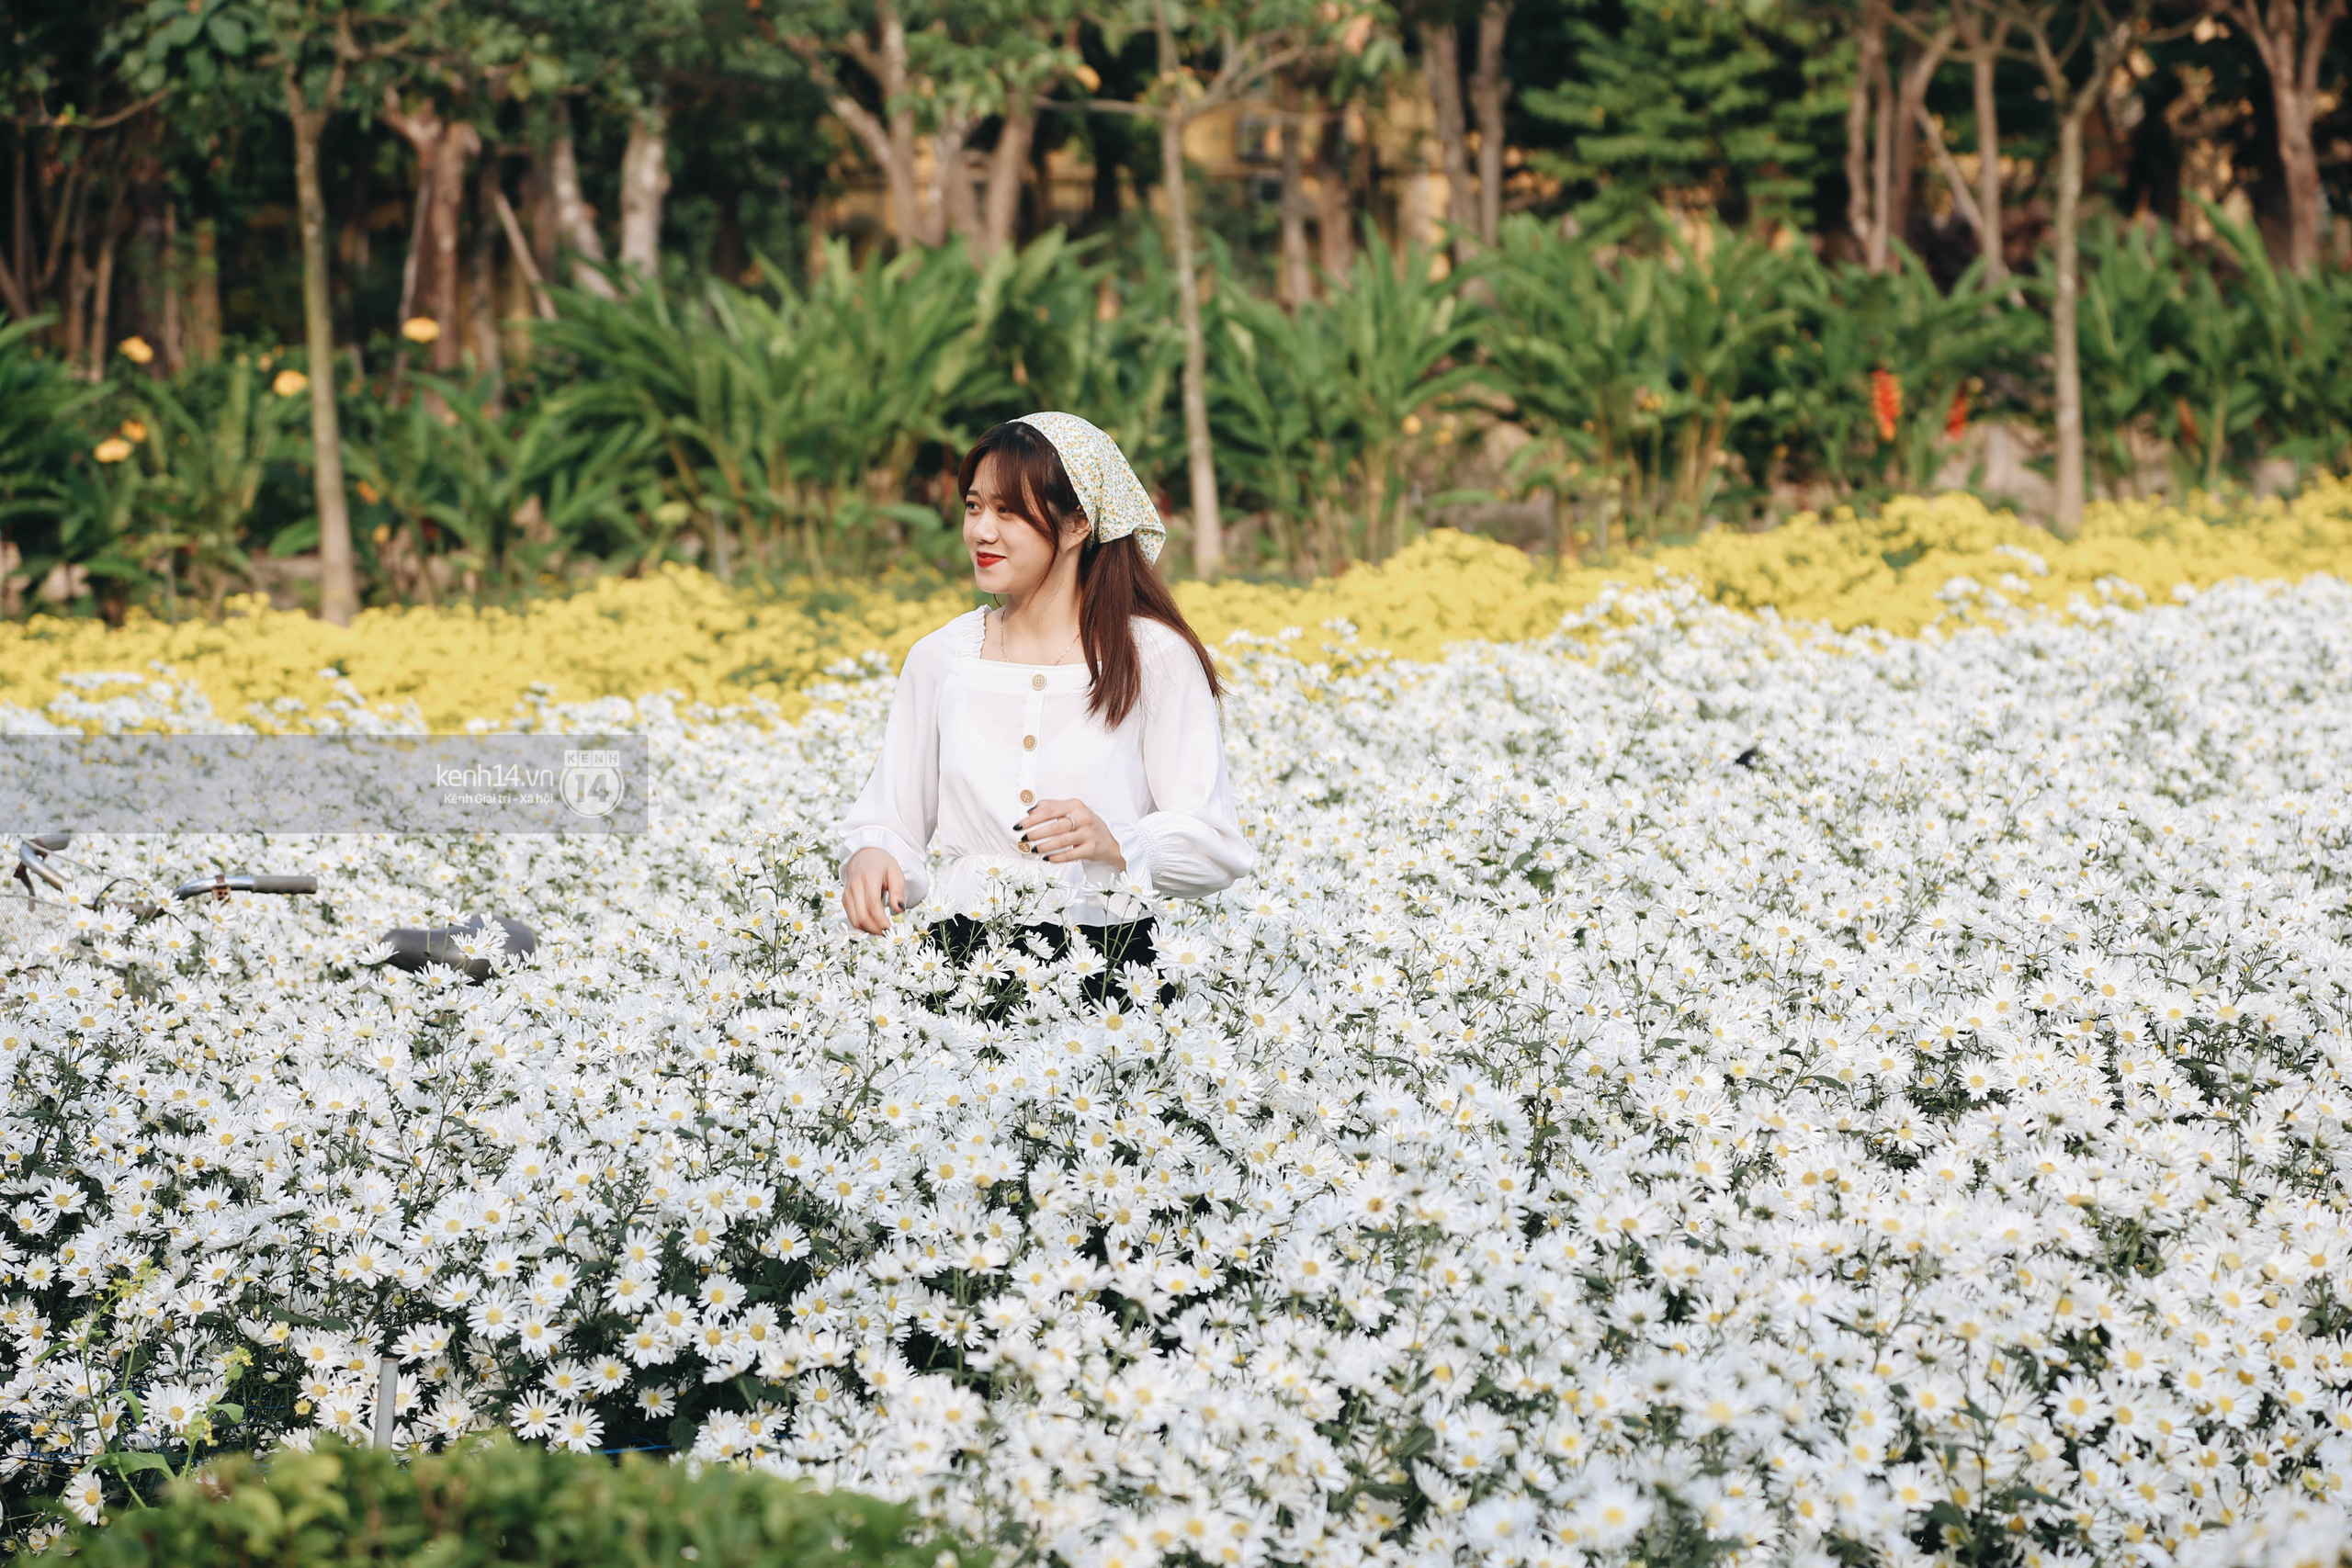 Trường ĐH rộng gần 200 ha có vườn hoa đẹp nhất mùa đông Hà Nội